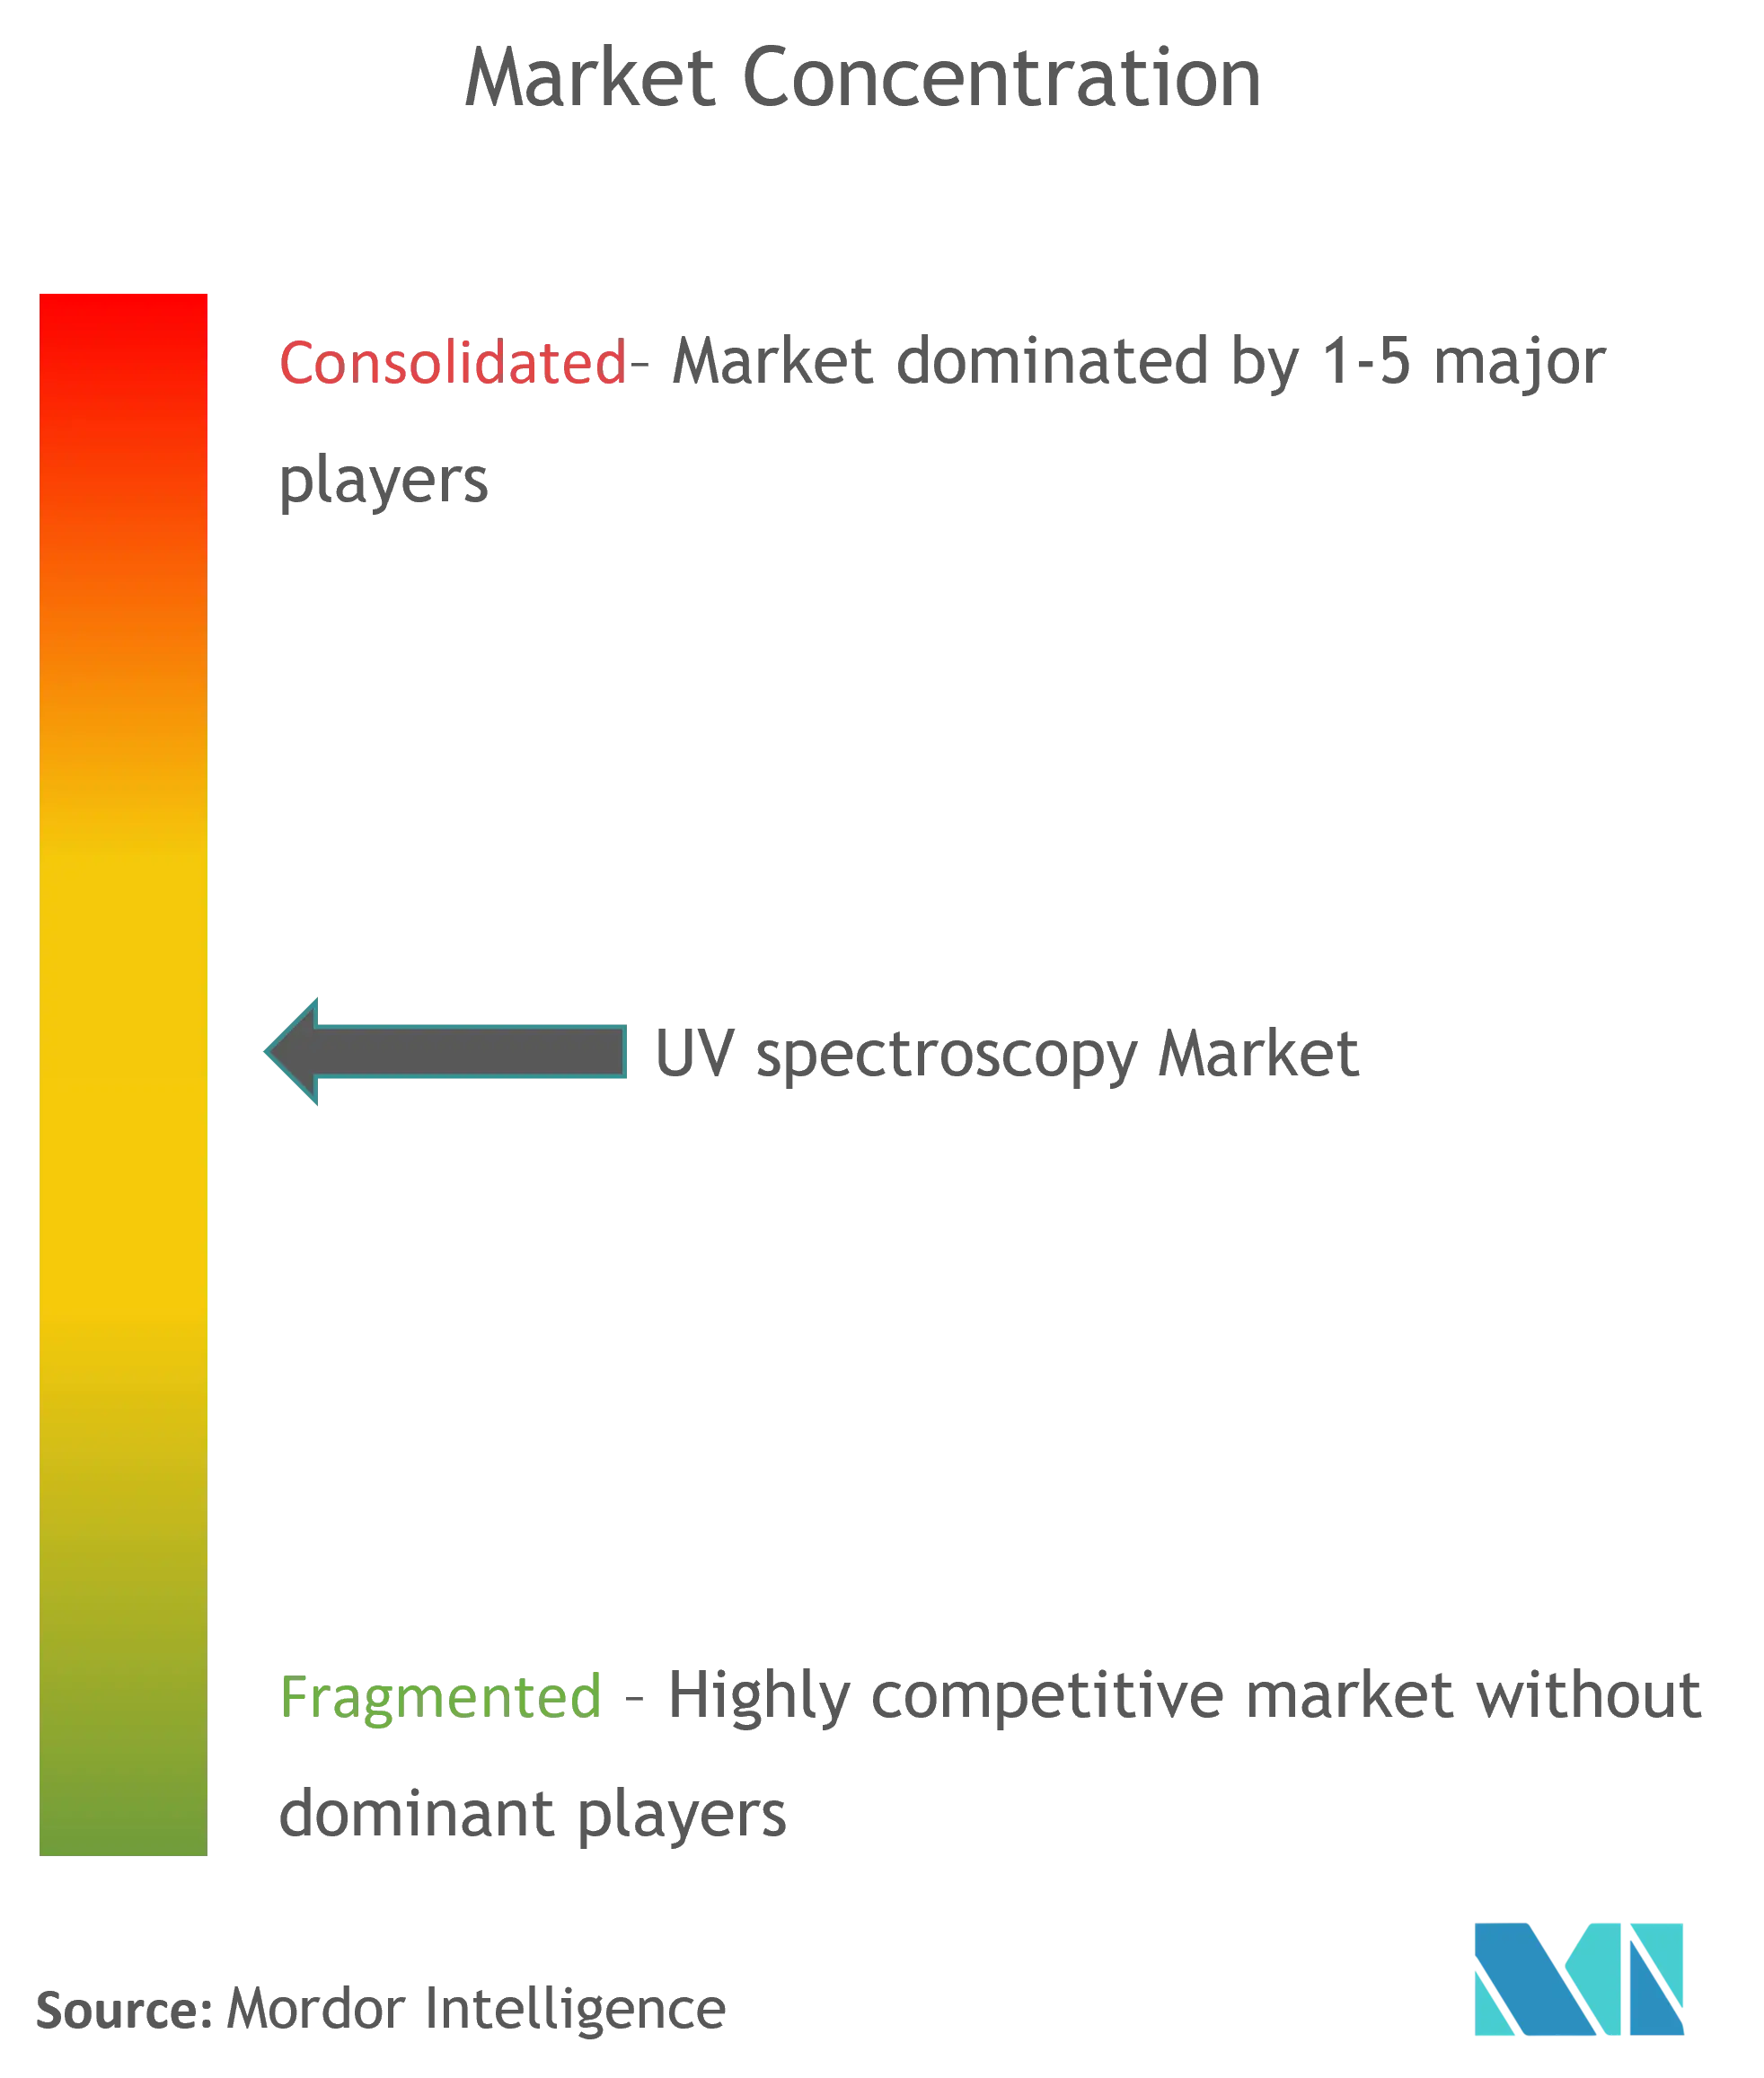 UV Spectroscopy Market Concentration